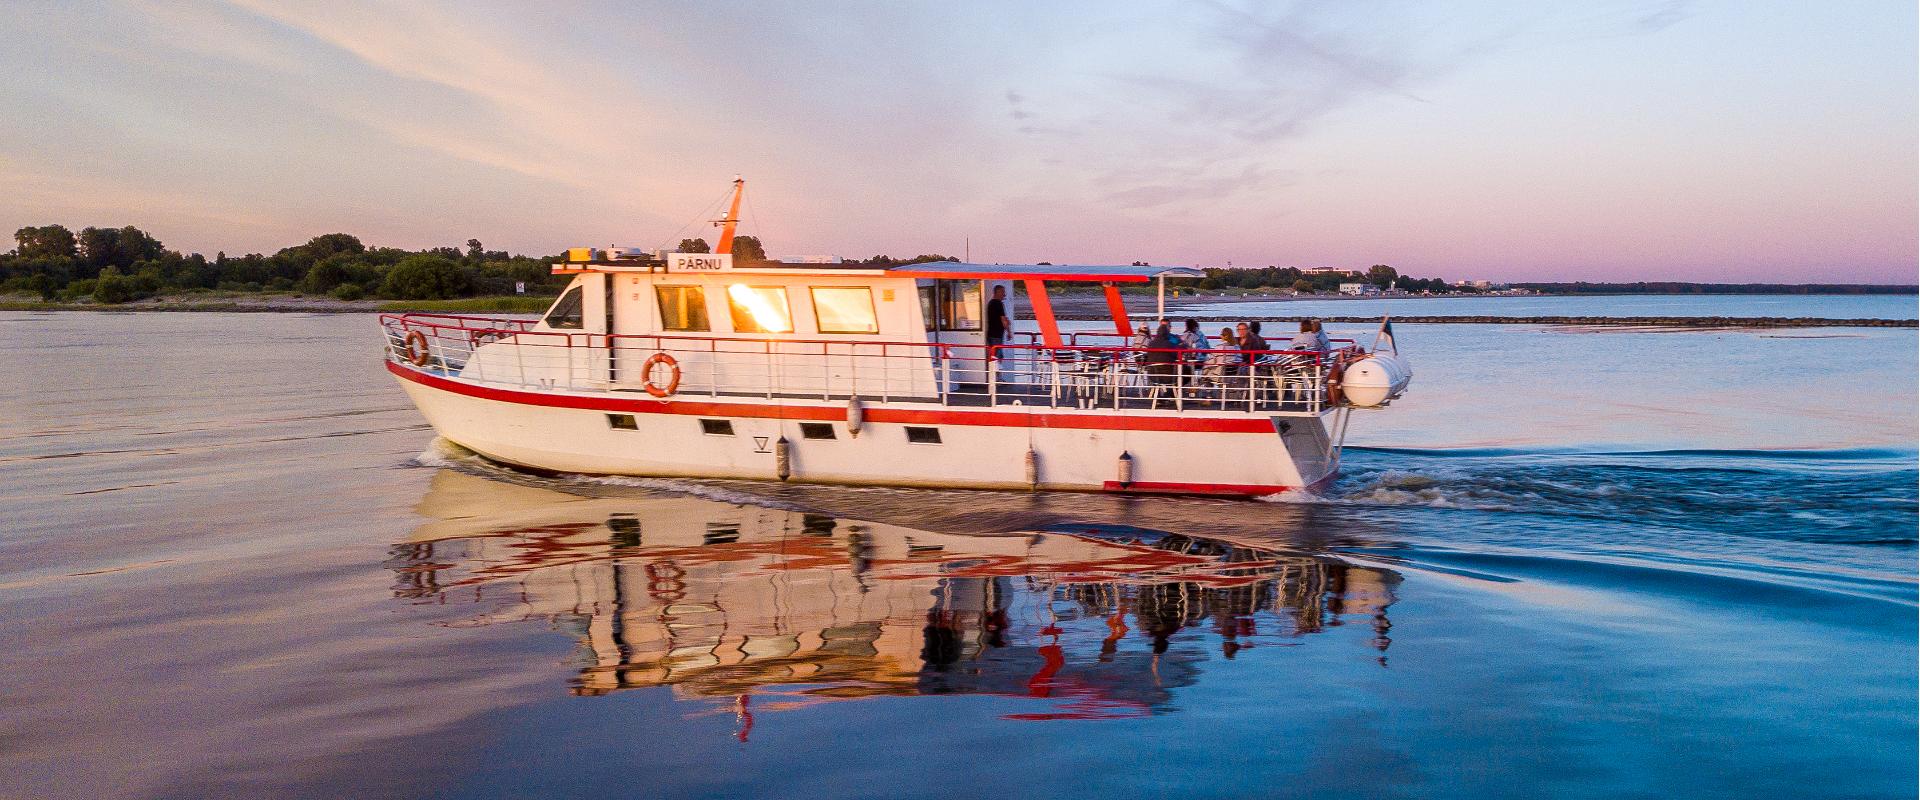 Pärnu Cruises laivaretket Pärnun joella ja lahdella